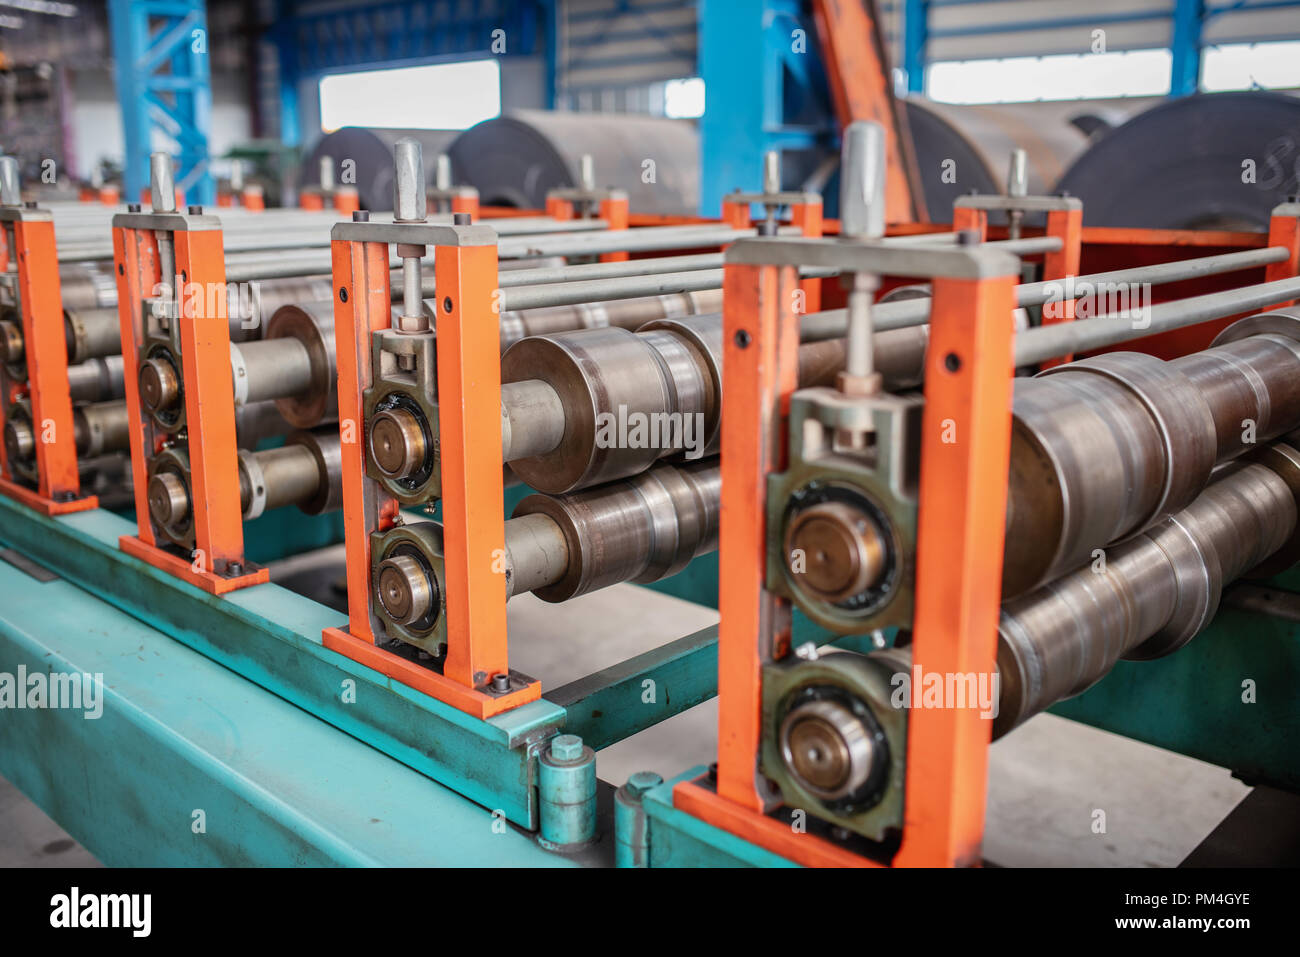 Enormi macchinari in fabbrica per la produzione di opere in metallo. Foto Stock